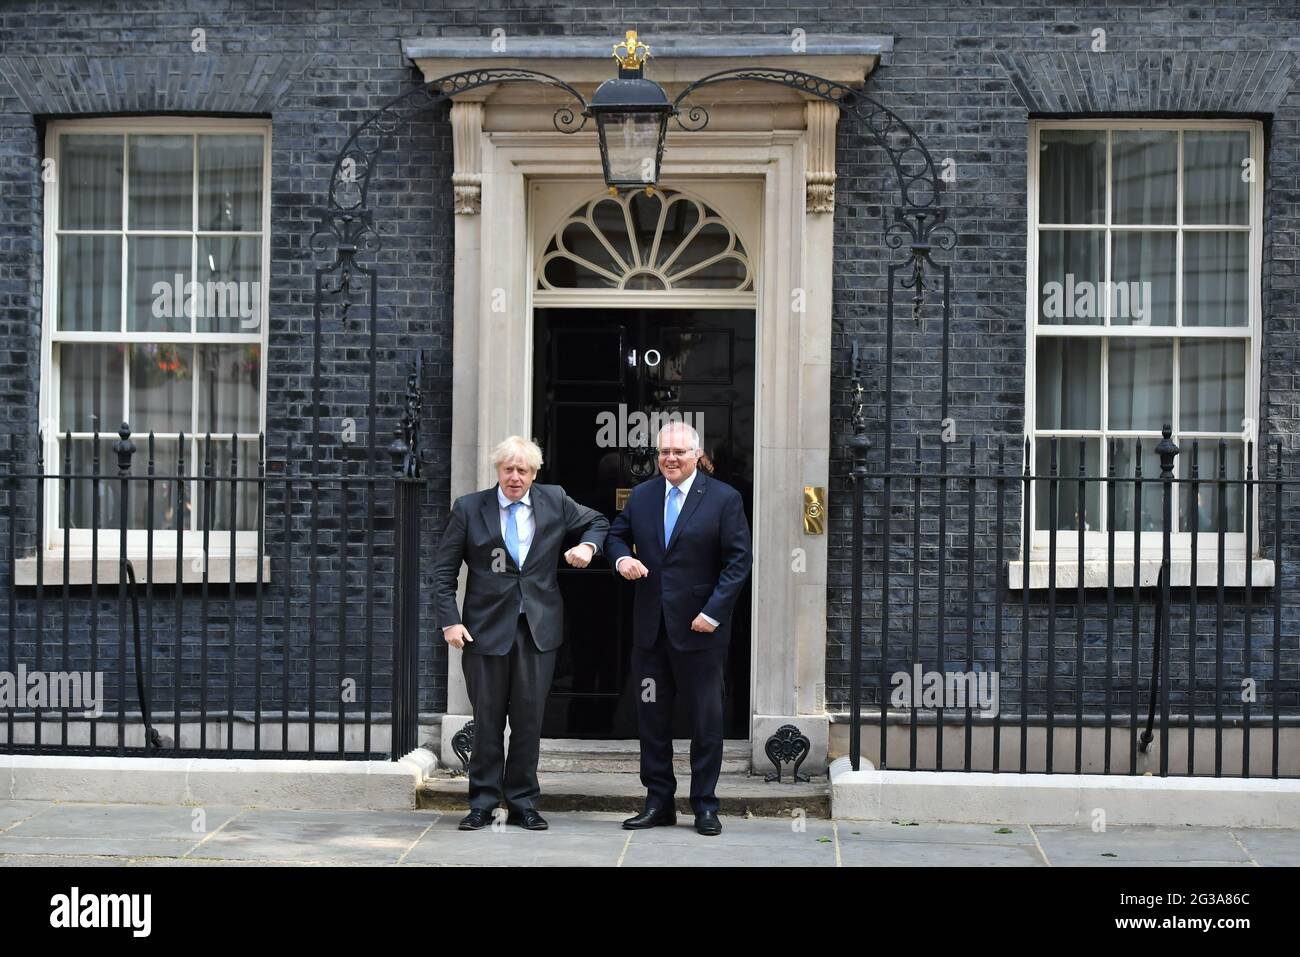 Le Premier ministre Boris Johnson salue le Premier ministre australien Scott Morrison au 10 Downing Street, à Londres, avant une réunion pour annoncer officiellement un accord commercial avec le Royaume-Uni. Ce sera le premier accord commercial du Royaume-Uni entièrement négocié depuis sa sortie de l'Union européenne. Date de la photo: Mardi 15 juin 2021. Banque D'Images